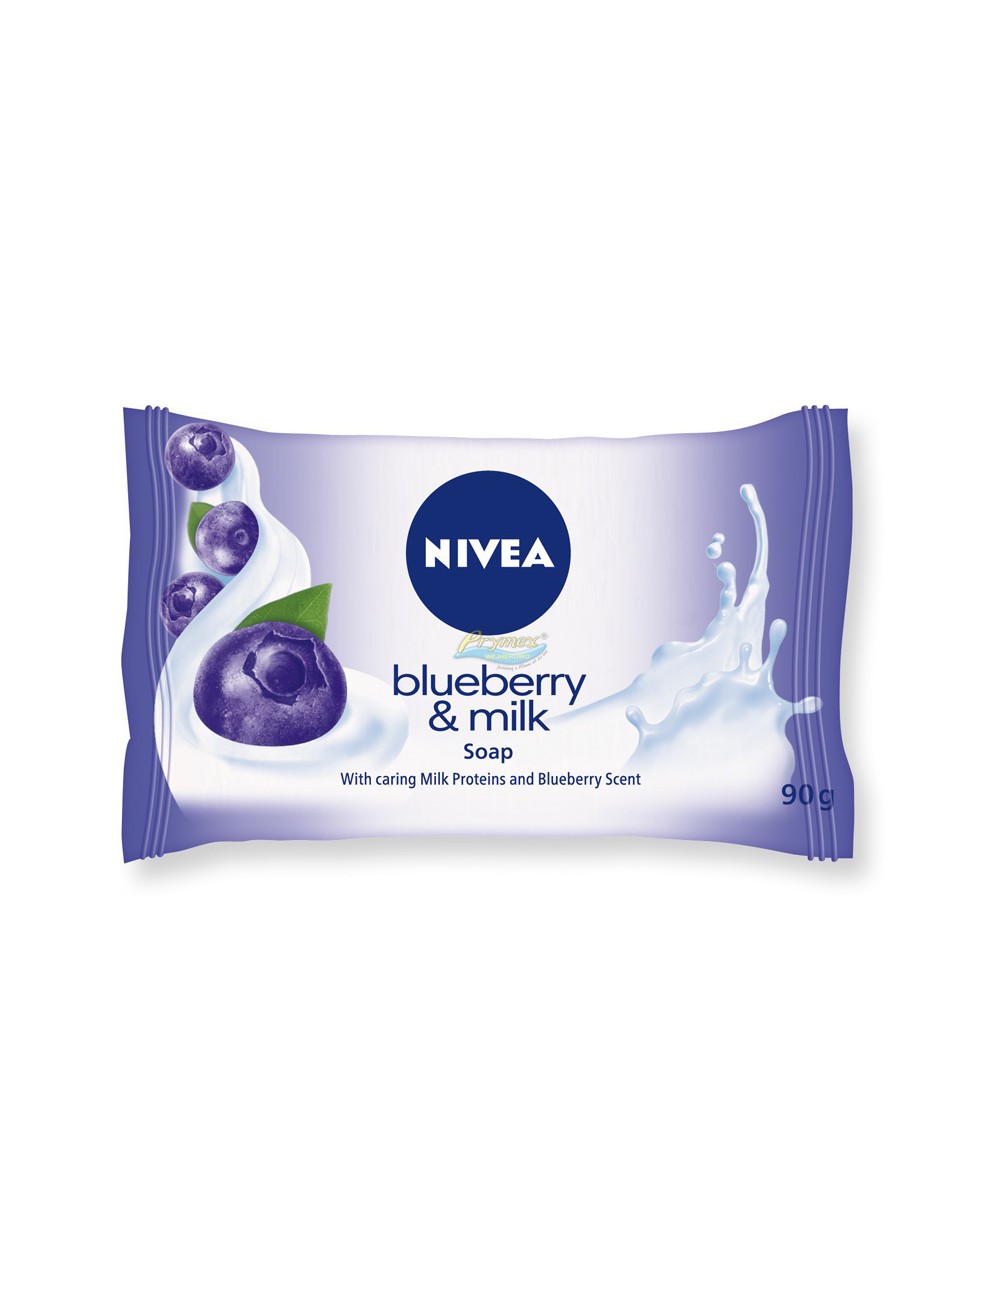 Nivea Blueberry & Milk 90g – mydło w kostce z ekstraktem z jagód i proteinami mleka